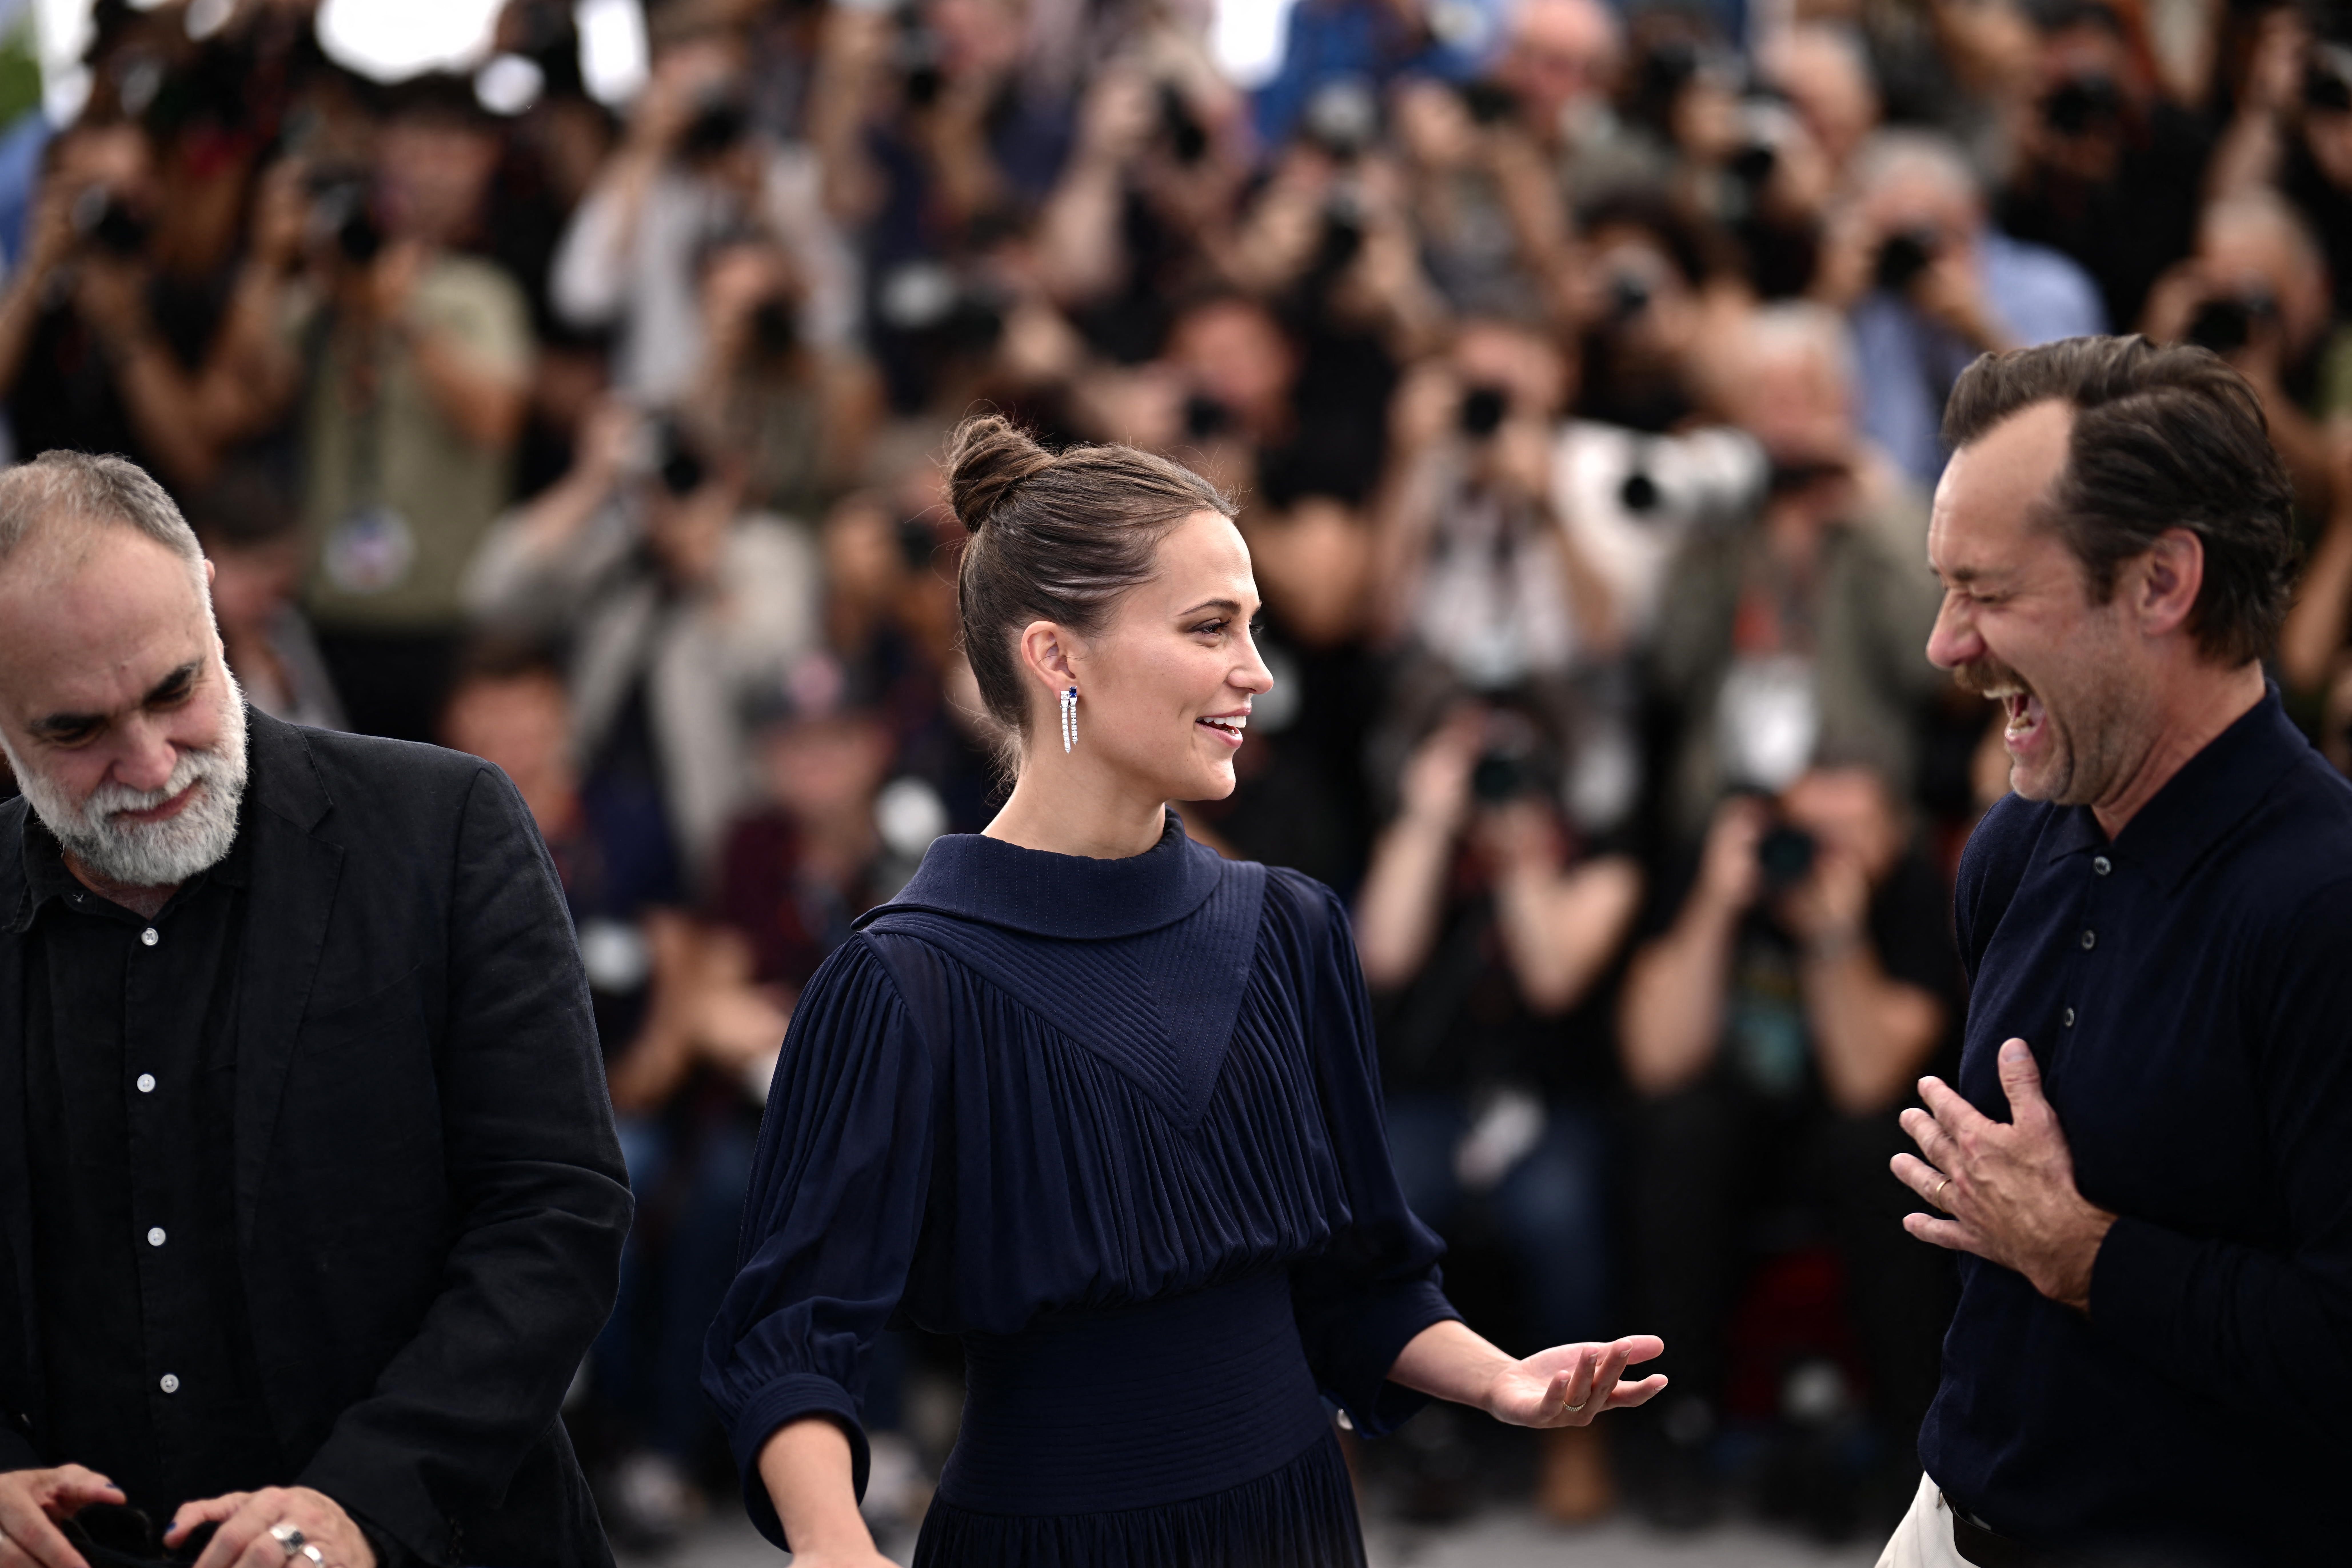 Jude Law & Alicia Vikander 'Firebrand' Movie Gets 8 Minute-Plus